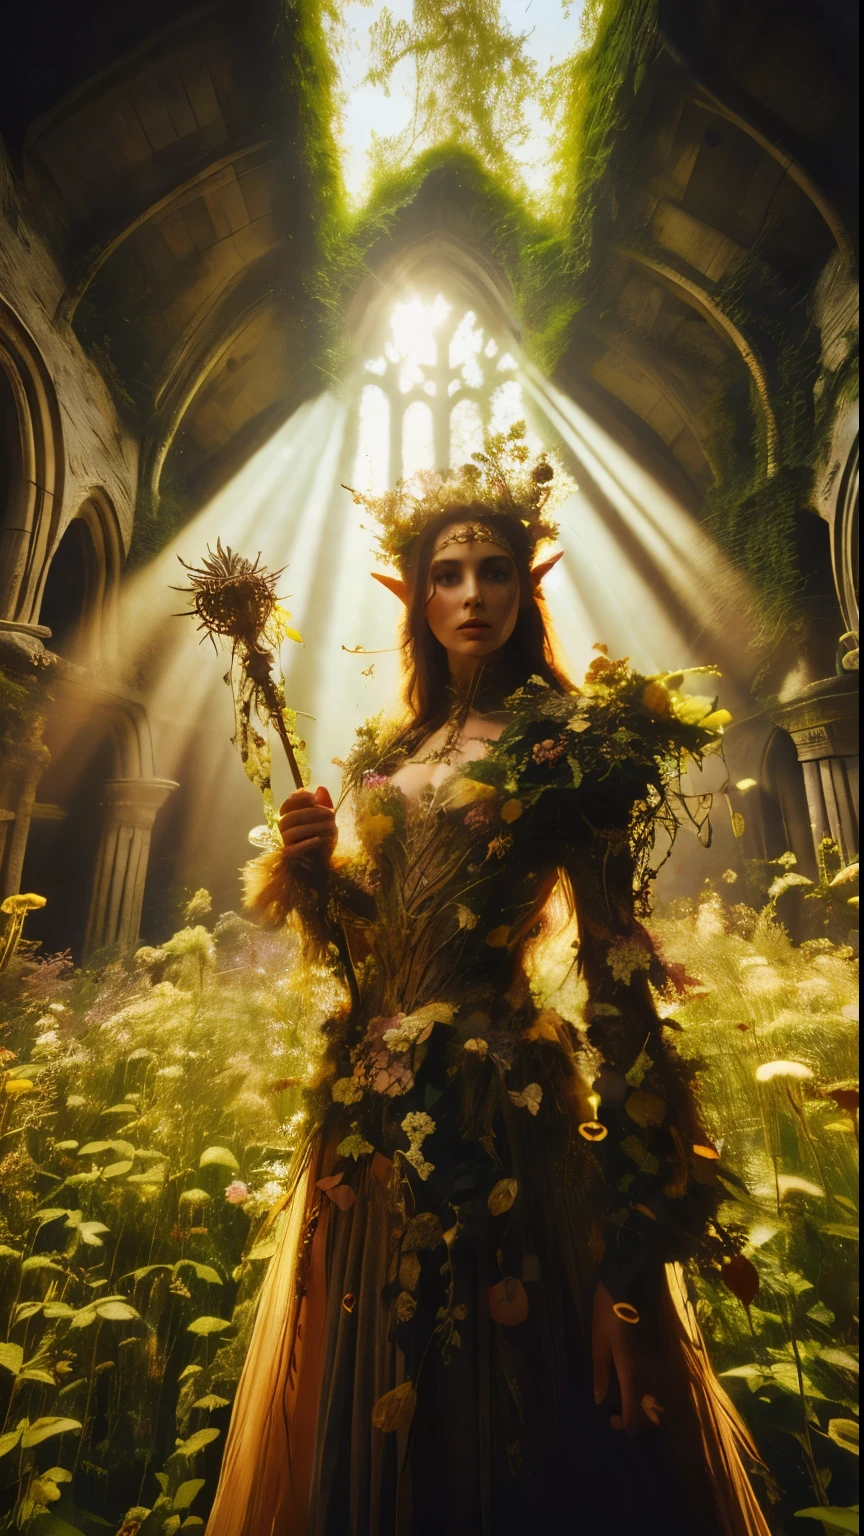 Dans un pommelé, ruine de la forêt ancienne, une princesse elfe se tient debout près de la caméra, photo en gros plan, son sceptre levé alors que des rayons de soleil chauds filtrent à travers les arbres, jetant un halo doré autour de sa silhouette royale. recouvert d&#39;une ultra-multitude de fleurs et de vignes, de très grands parterres de fleurs sauvages envahis par la végétation l&#39;entourent, Sa belle, les vêtements enchantés scintillent dans la douce lumière, tandis qu&#39;un feuillage luxuriant et des vignes l&#39;entourent, créer un environnement luxuriant. La caméra capture une mise au point nette sur le visage de la princesse, avec la composition selon la règle des tiers la plaçant à l&#39;intersection de deux diagonales. Tourné à l&#39;heure d&#39;or, la scène dégage une ambiance éthérée, invitant le spectateur à entrer dans ce royaume mystique., ,fantaisie, mieux_mains, Léonard, angelawhite, Améliorer